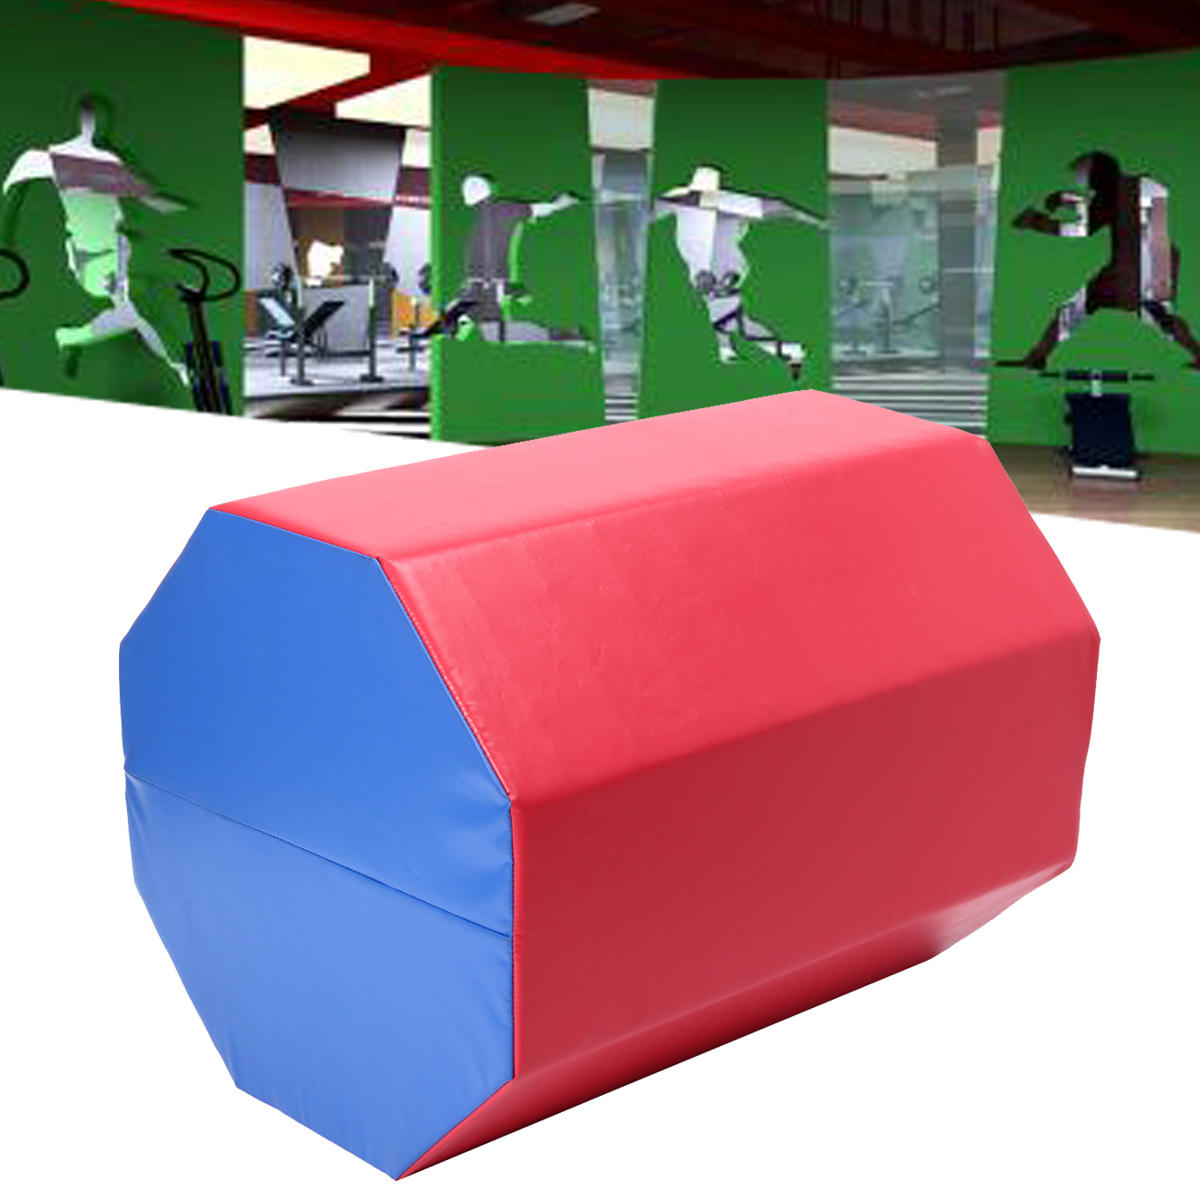 23,6 × 23,6 × octogonale boîte de saut octogonale sauter tapis de piste d'air de gymnastique de formation d'entraînement de sport de gymnastique